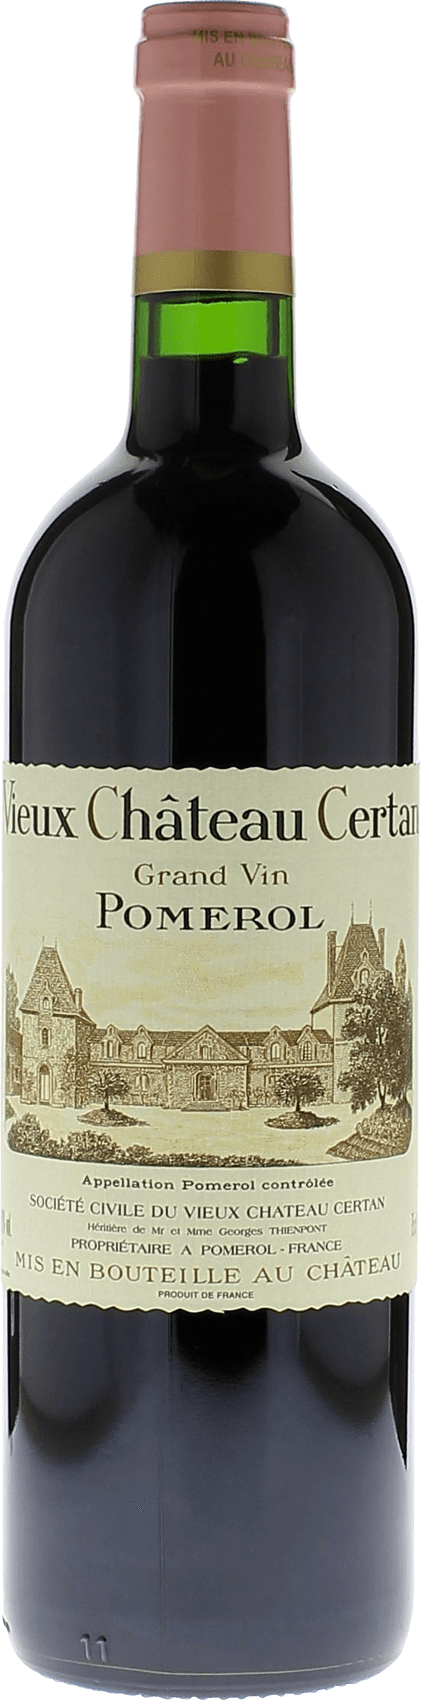 Vieux chteau  certan 2017  Pomerol, Bordeaux rouge